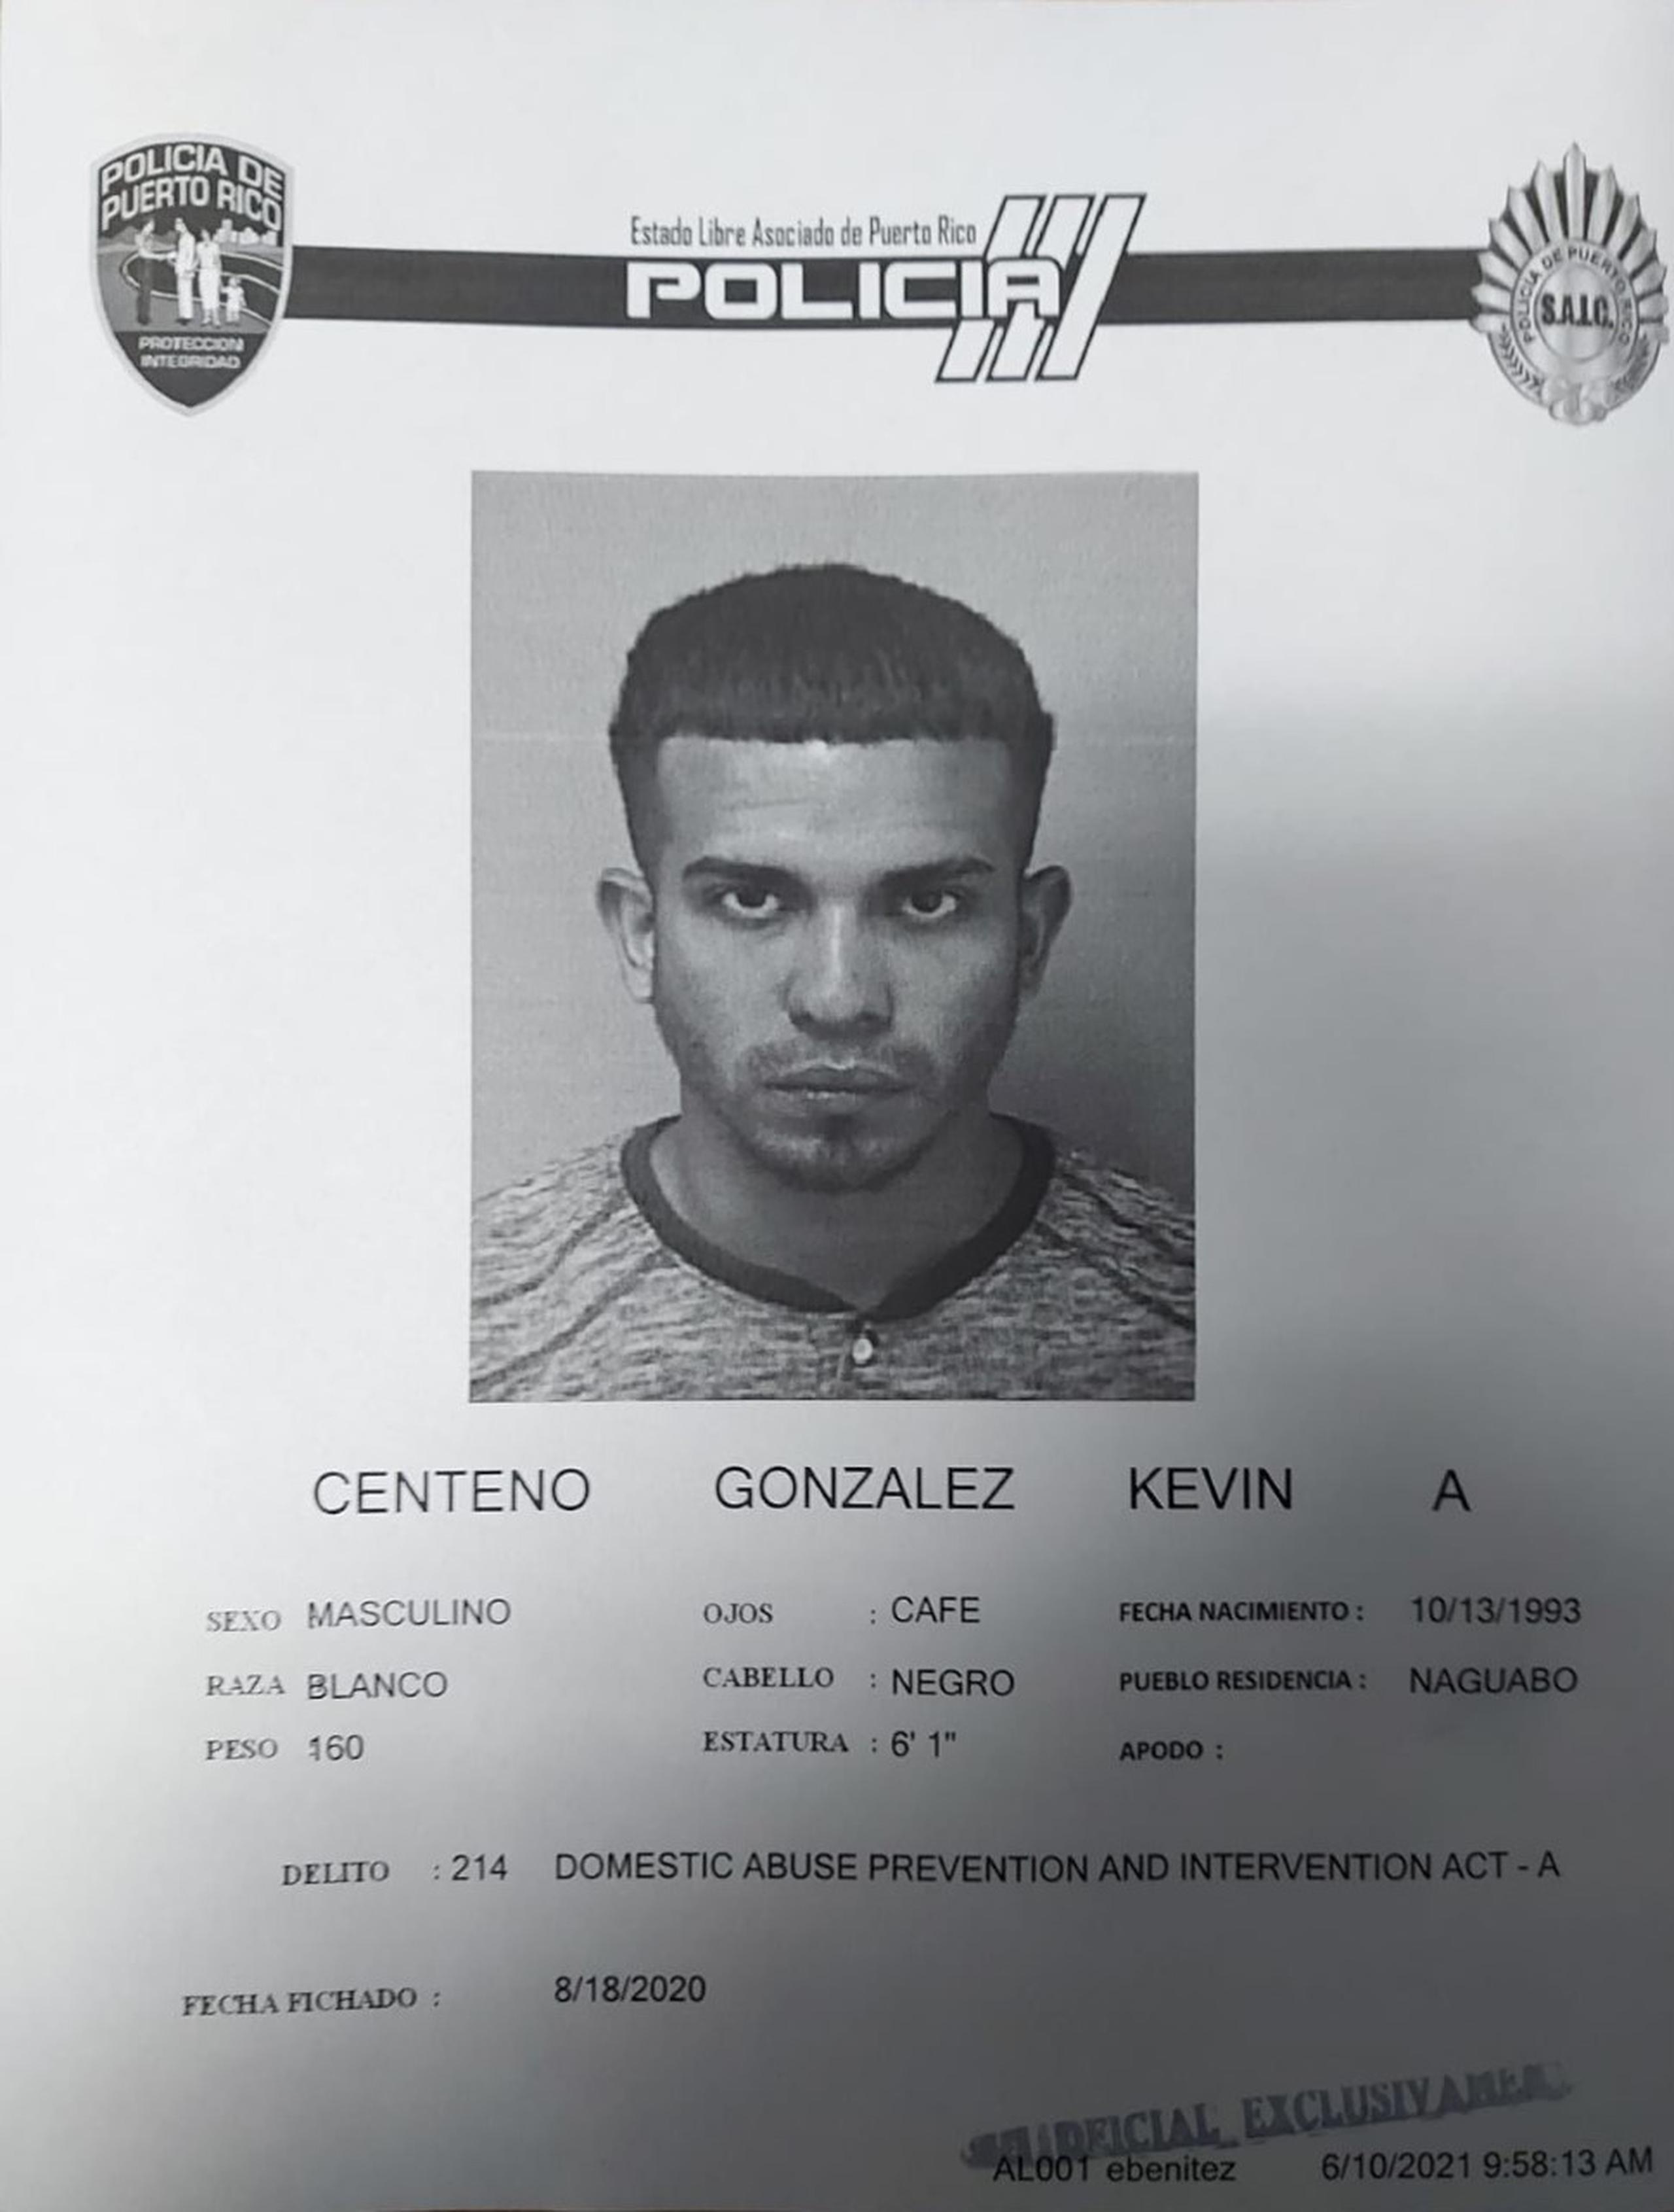 Las autoridades buscan a Kevin A. Centeno González contra quien pesa una orden de arresto por presuntamente agredir a su pareja embarazada.